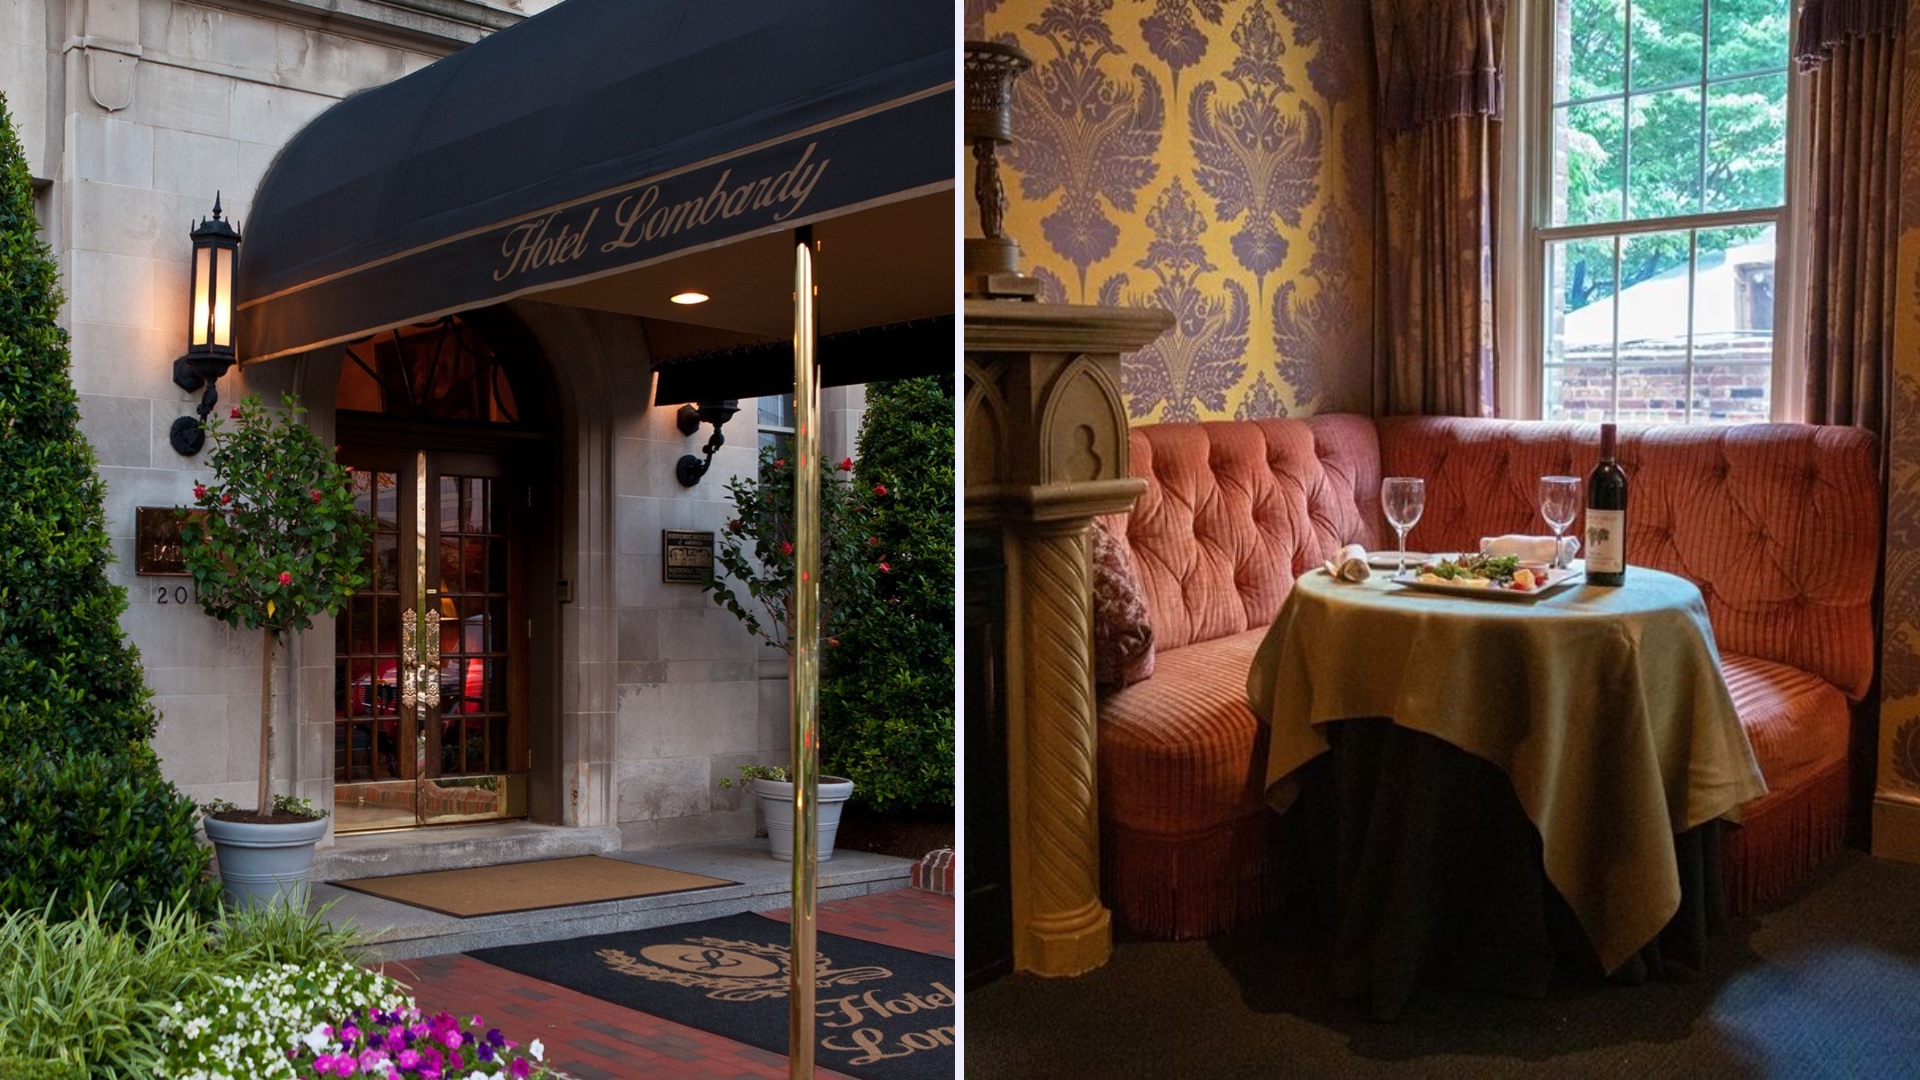 Cuánto cuesta una noche en el Hotel Lombardy, lugar en el que AMLO se hospedó en su visita a Washington